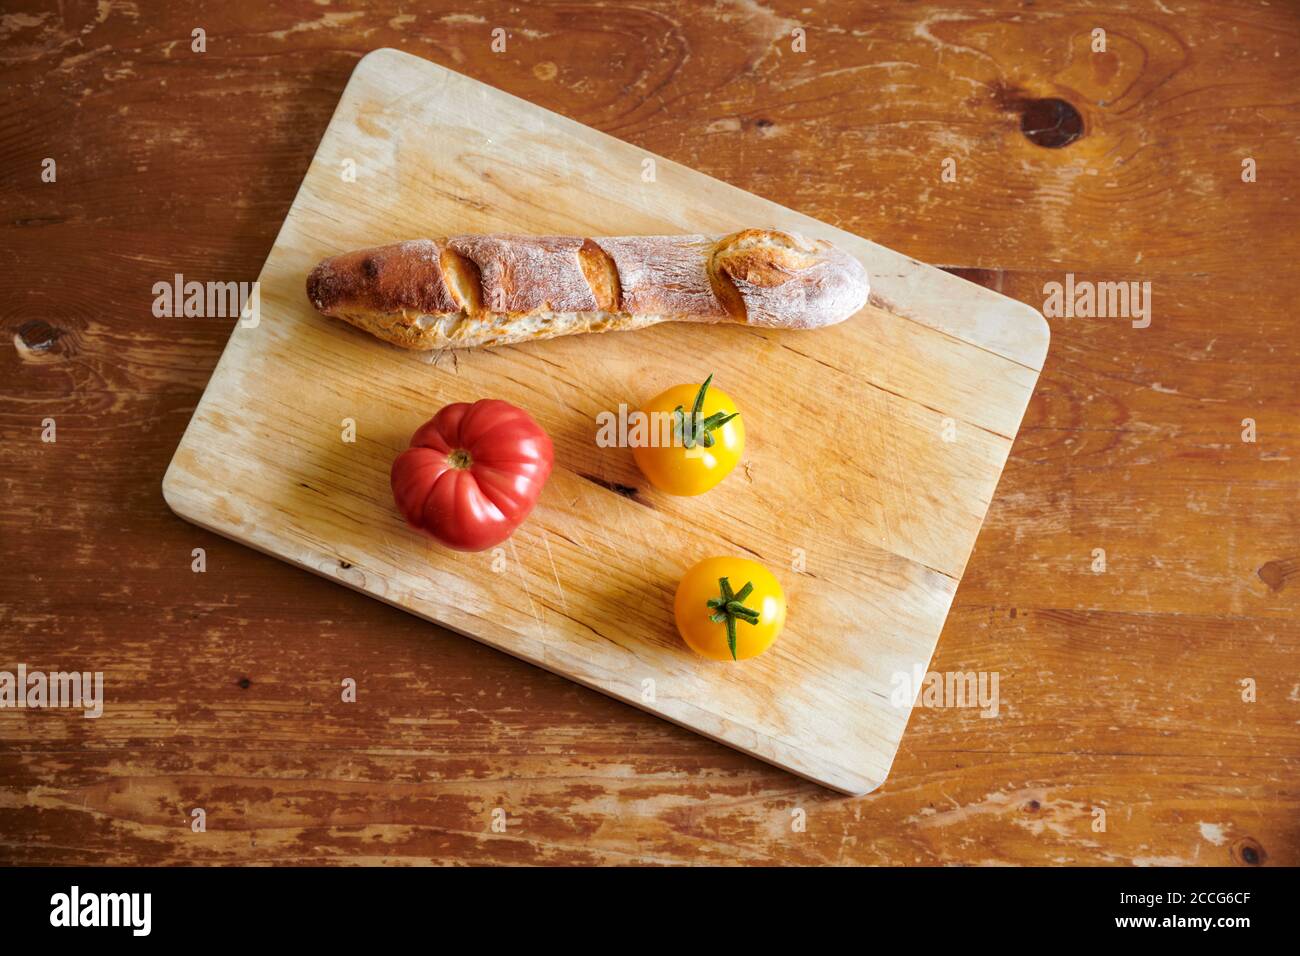 Ein selbstgebackenes Baguette / Fluet und selbst angebaute rote und gelbe Tomaten auf einem Holzbrett. Stock Photo